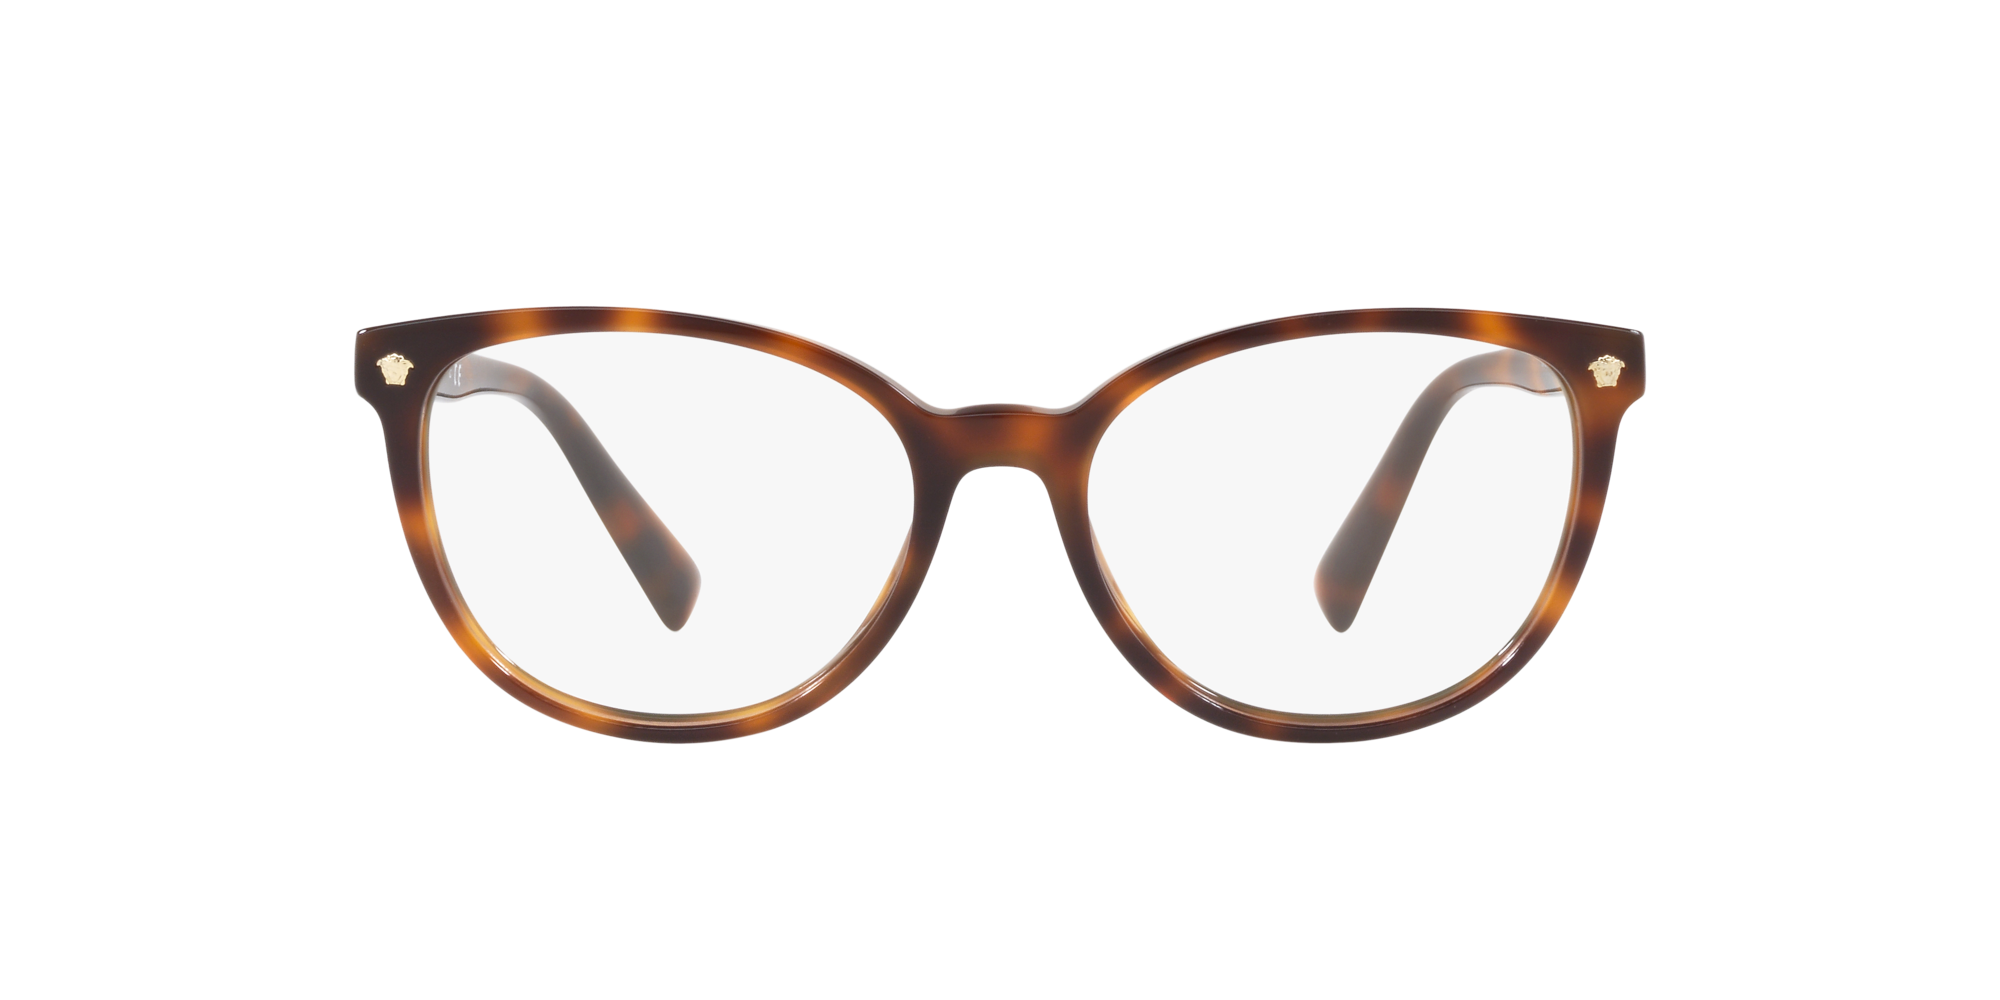 Details about   RARE NEW Genuine VERSACE MEDUSINA Crystal EyeGlasses Frame Glasses VE 3256 148 